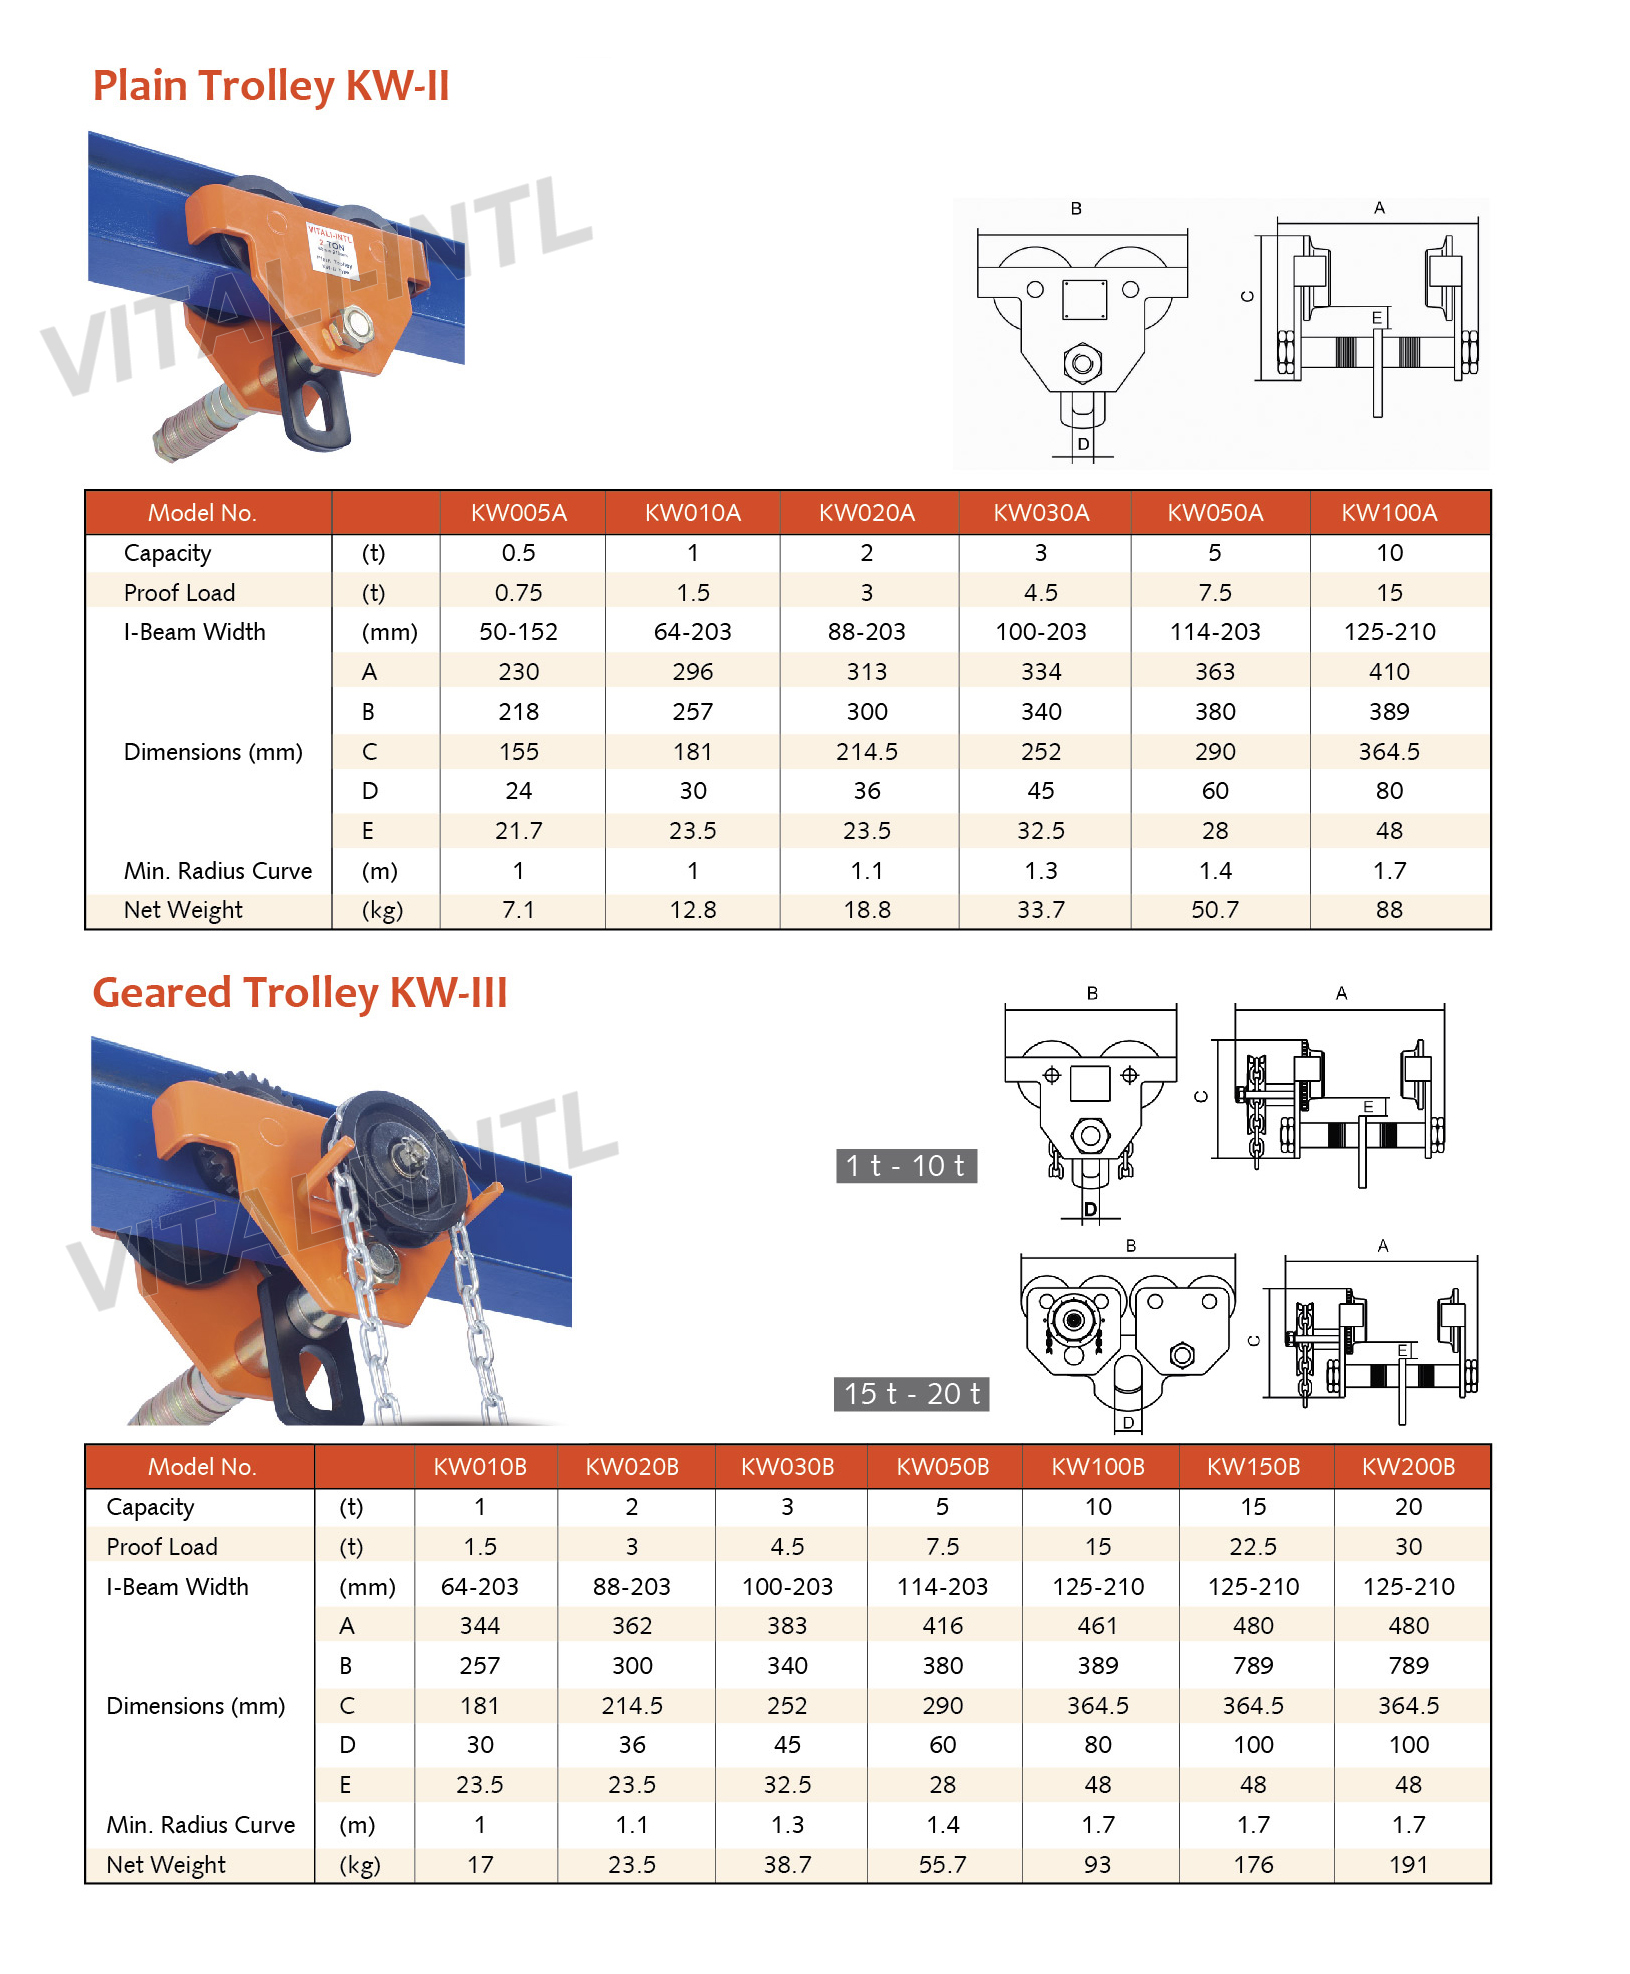 VITALI-INTL Plain Trolley KW-II Type & Geared Trolley KW-III Type Specifications